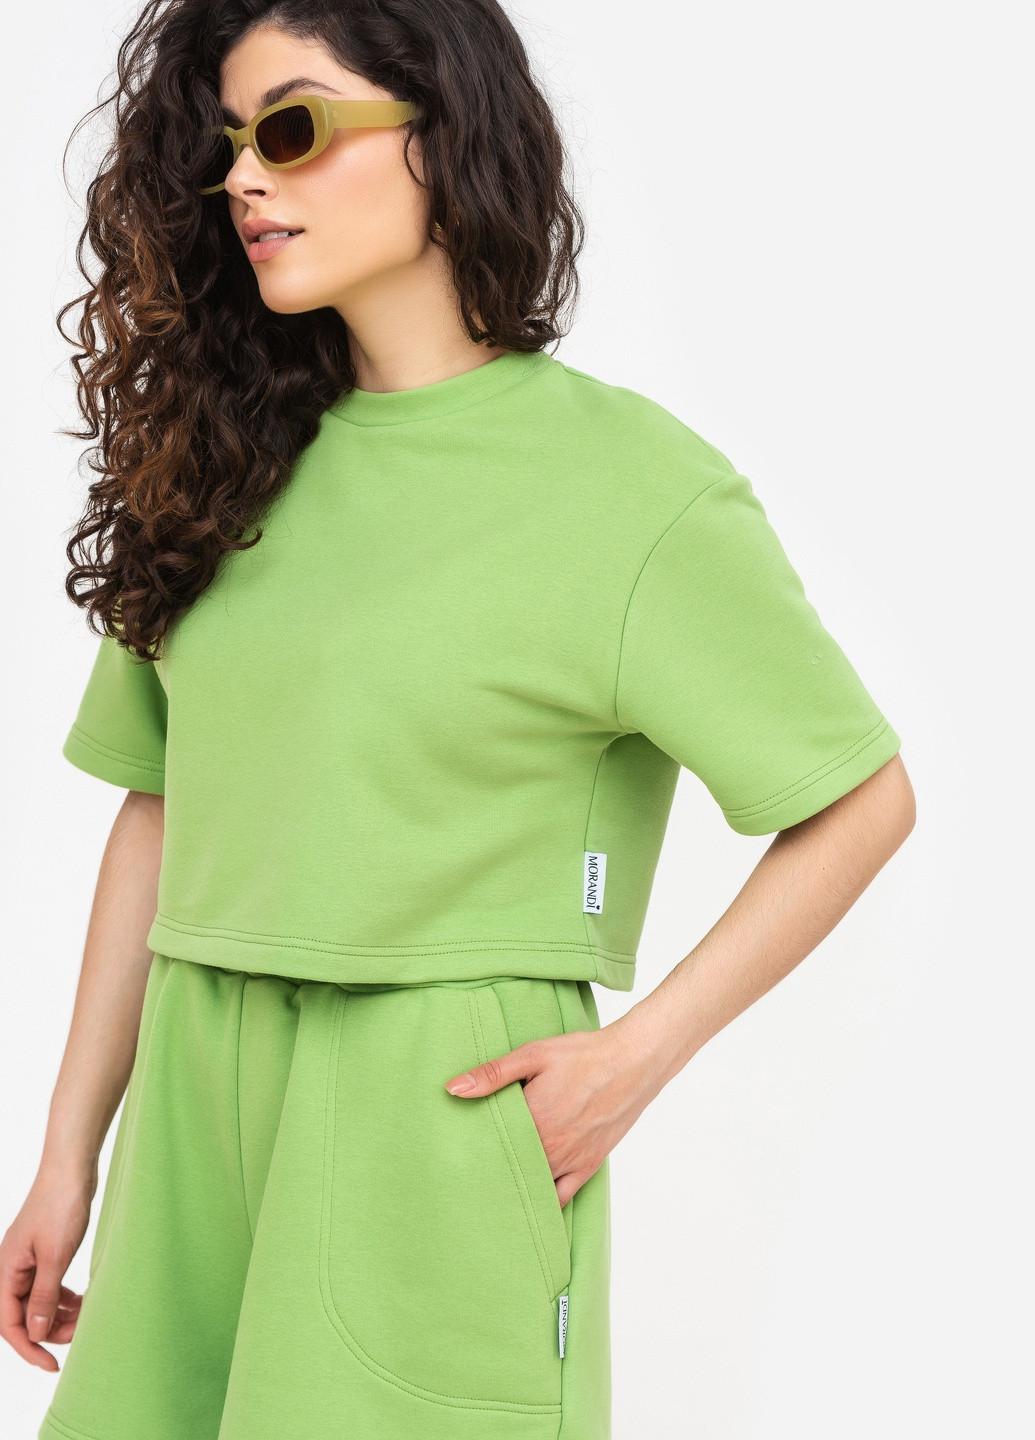 Зеленая всесезон короткая футболка трехнить зеленый чай с коротким рукавом MORANDI